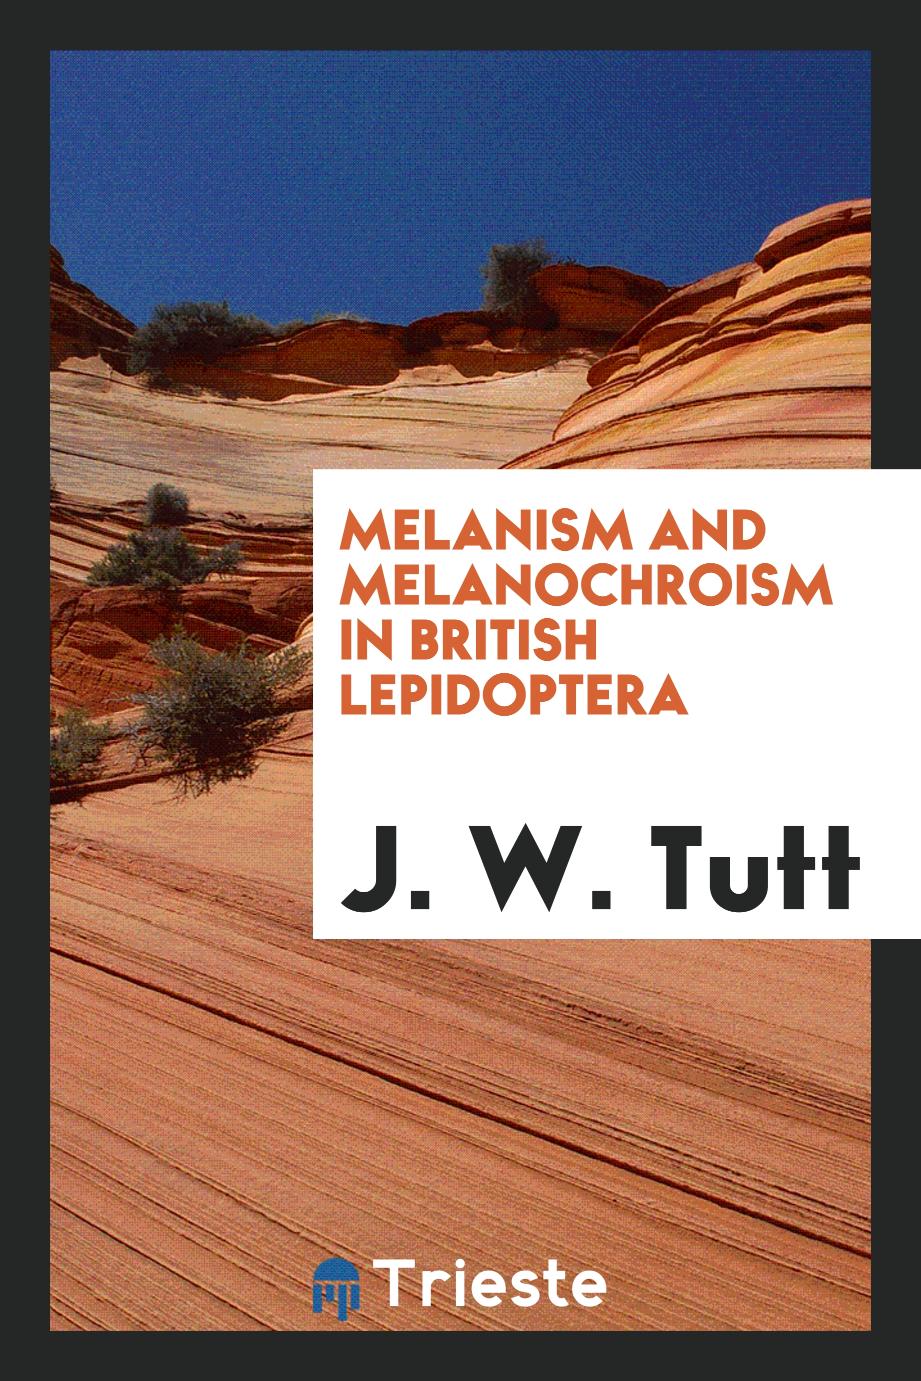 Melanism and Melanochroism in British Lepidoptera